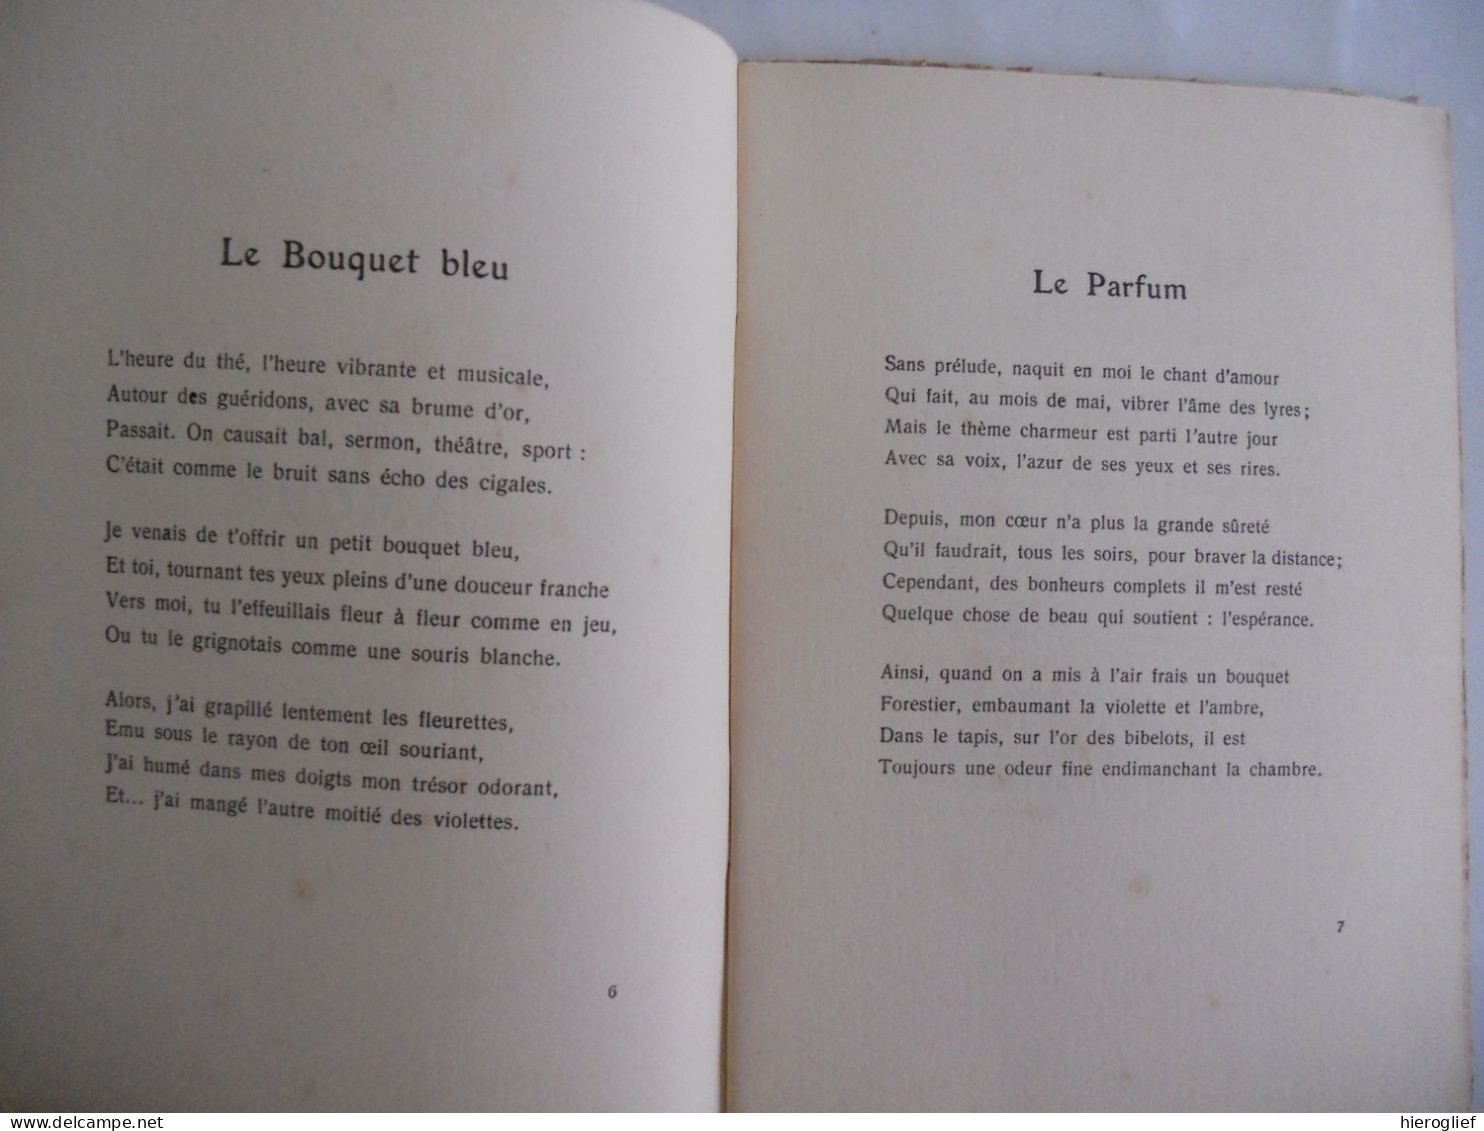 ELEGIES Par Jules Tellier Signé  1924 élégies Poèmes Poète Signé Dédicace ° Havre + Toulouse - Autores Franceses